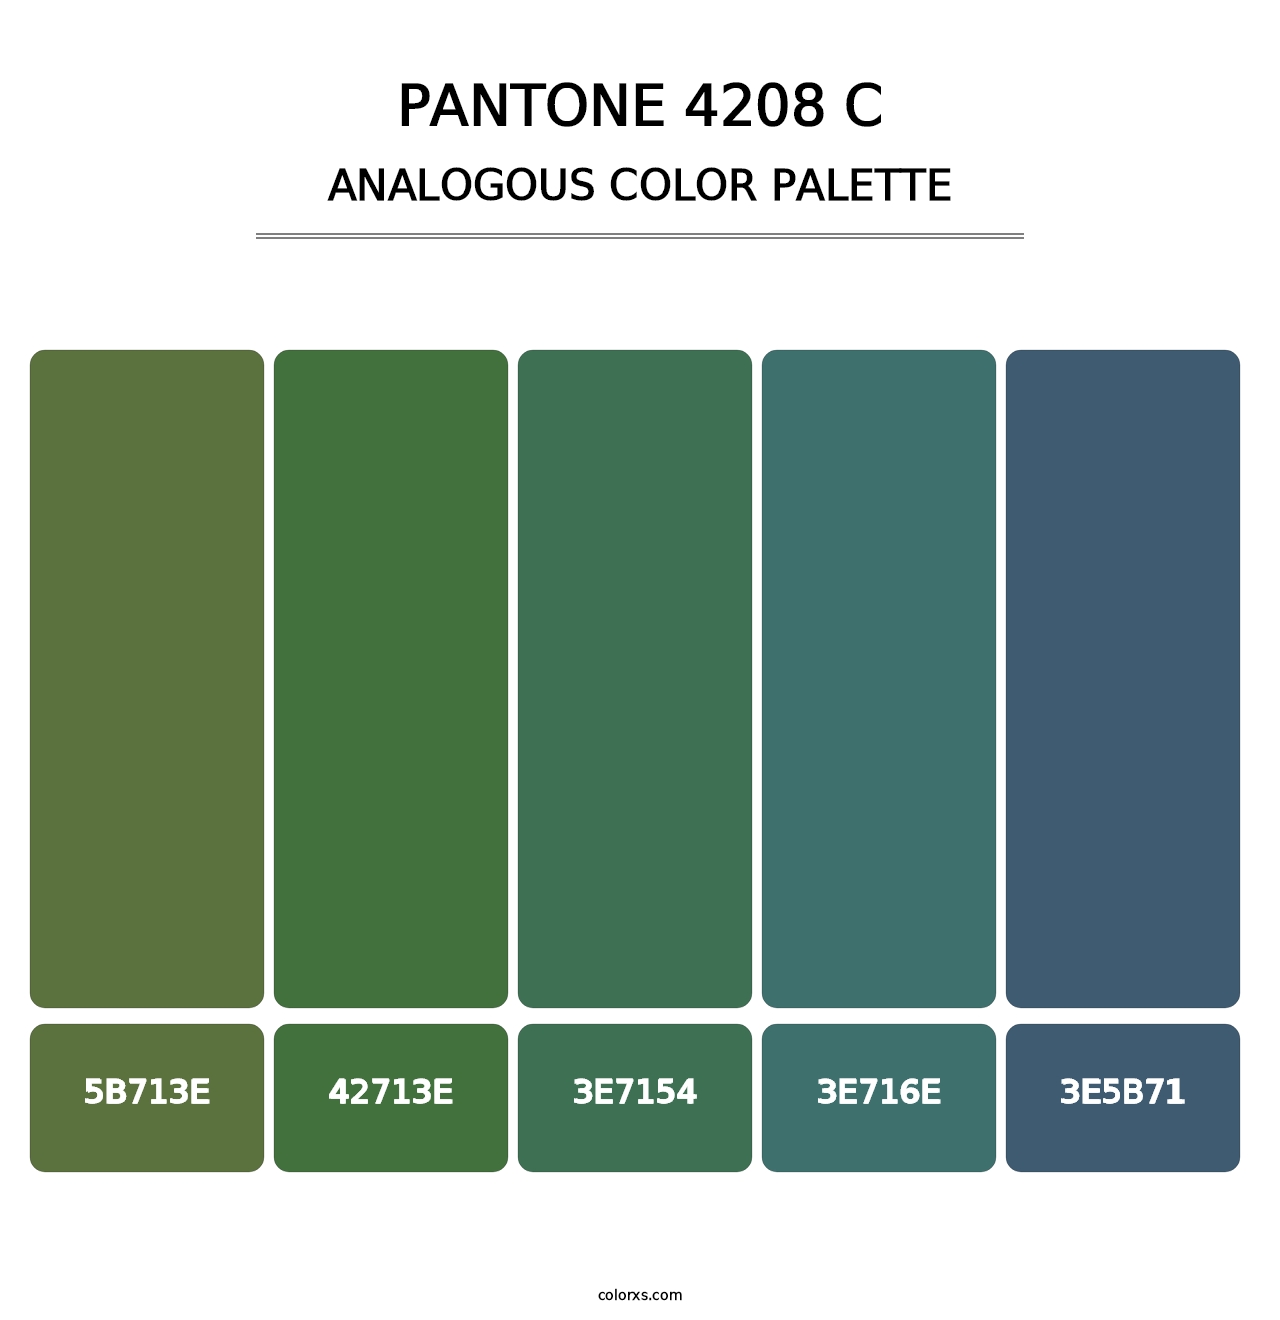 PANTONE 4208 C - Analogous Color Palette